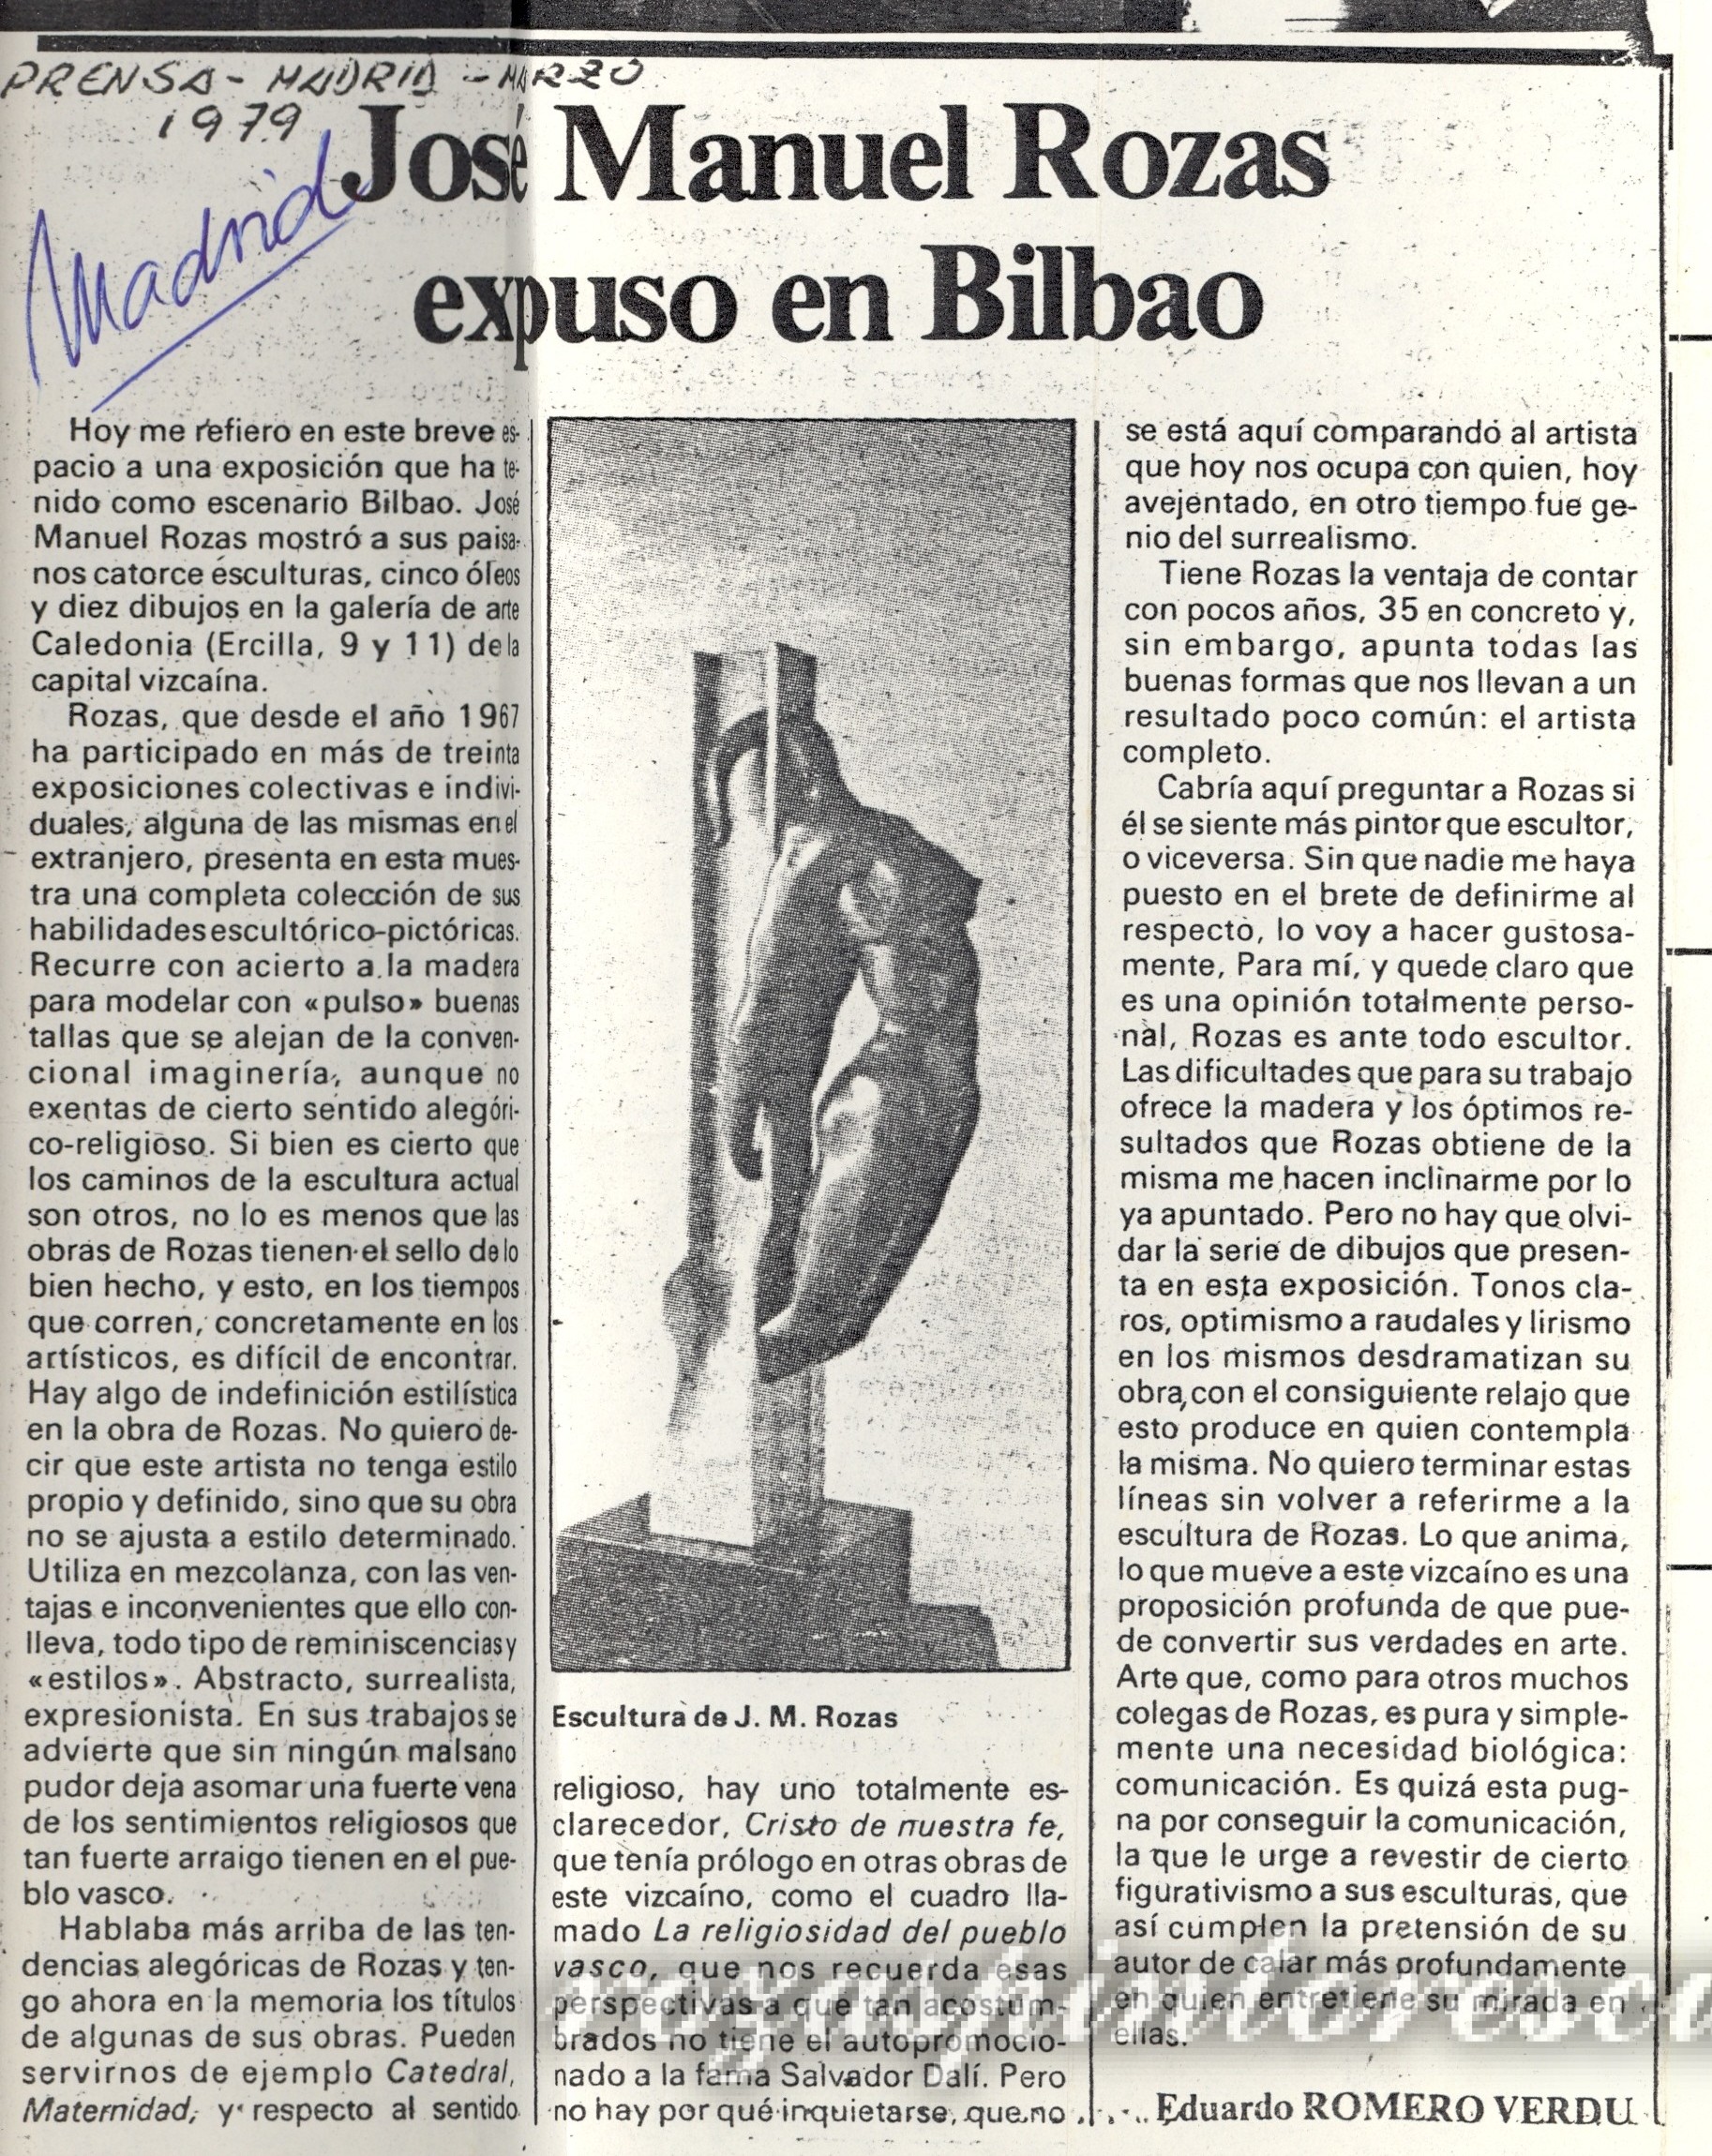 1979 Jose Manuel Rozas erakutsi zuen Bilbon – Eduardo Romero Verdu